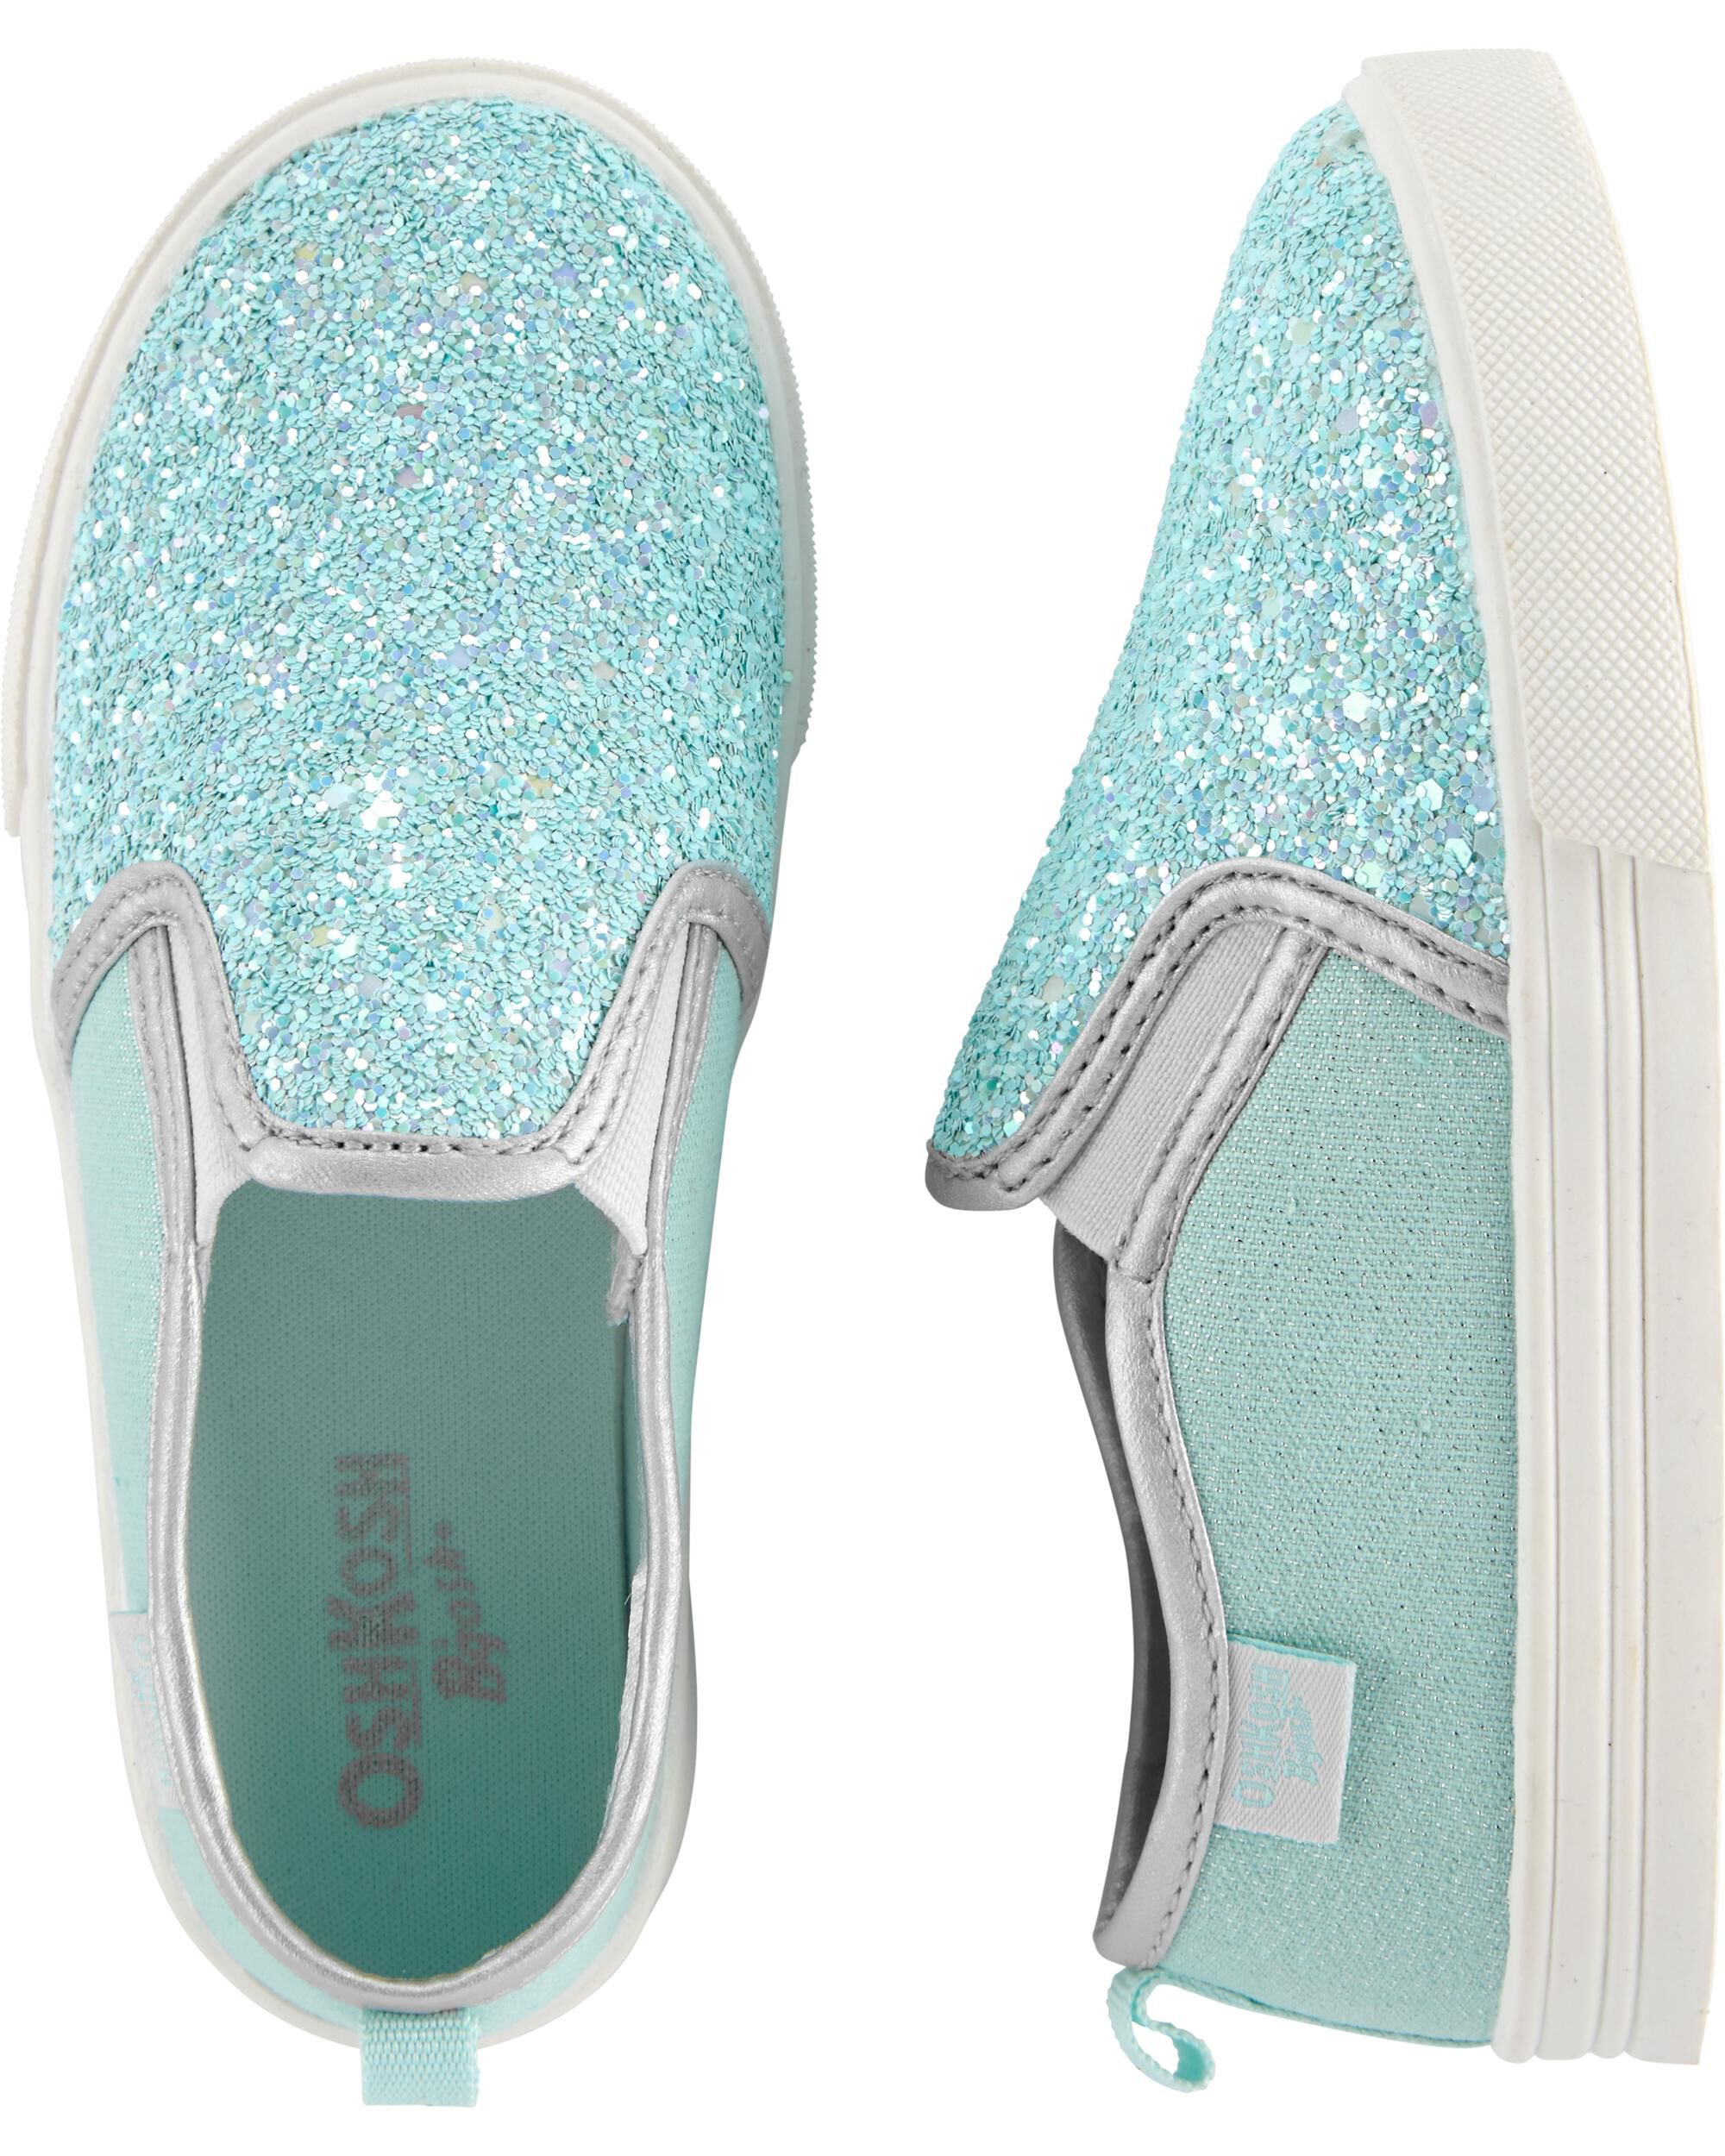 carter's sparkle shoes